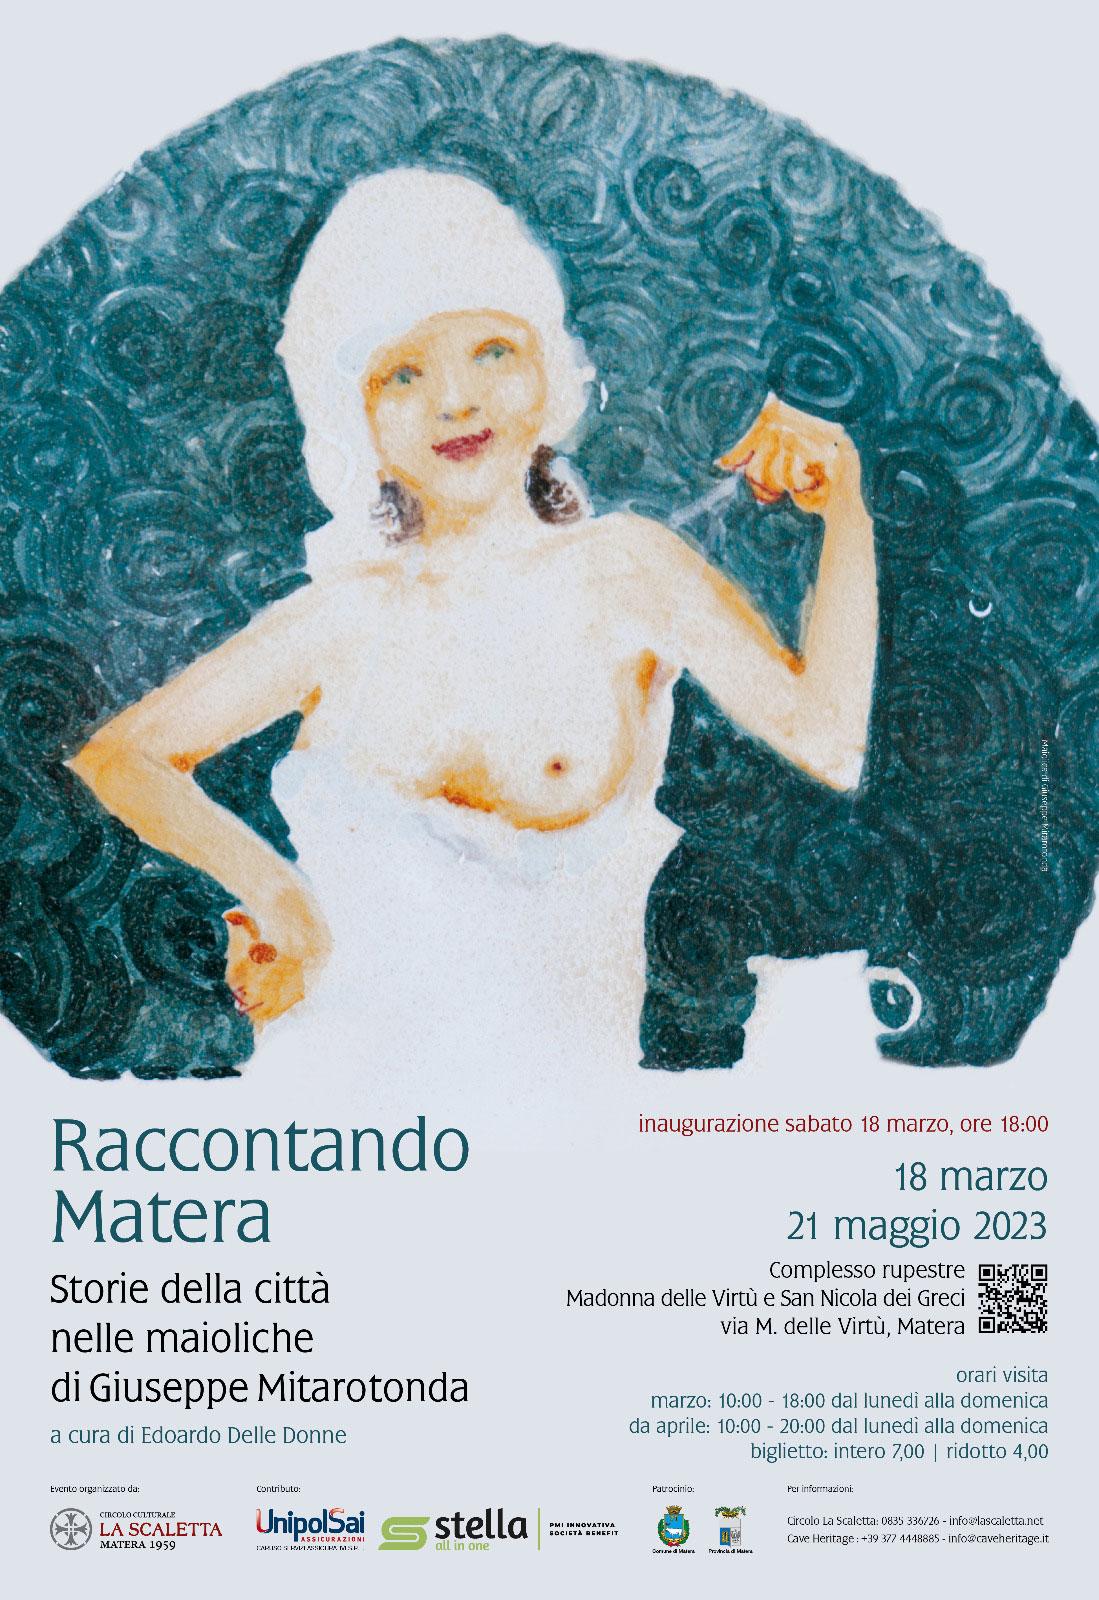 "Raccontando Matera" con le maioliche di Giuseppe Mitarotonda a Madonna delle Virtù